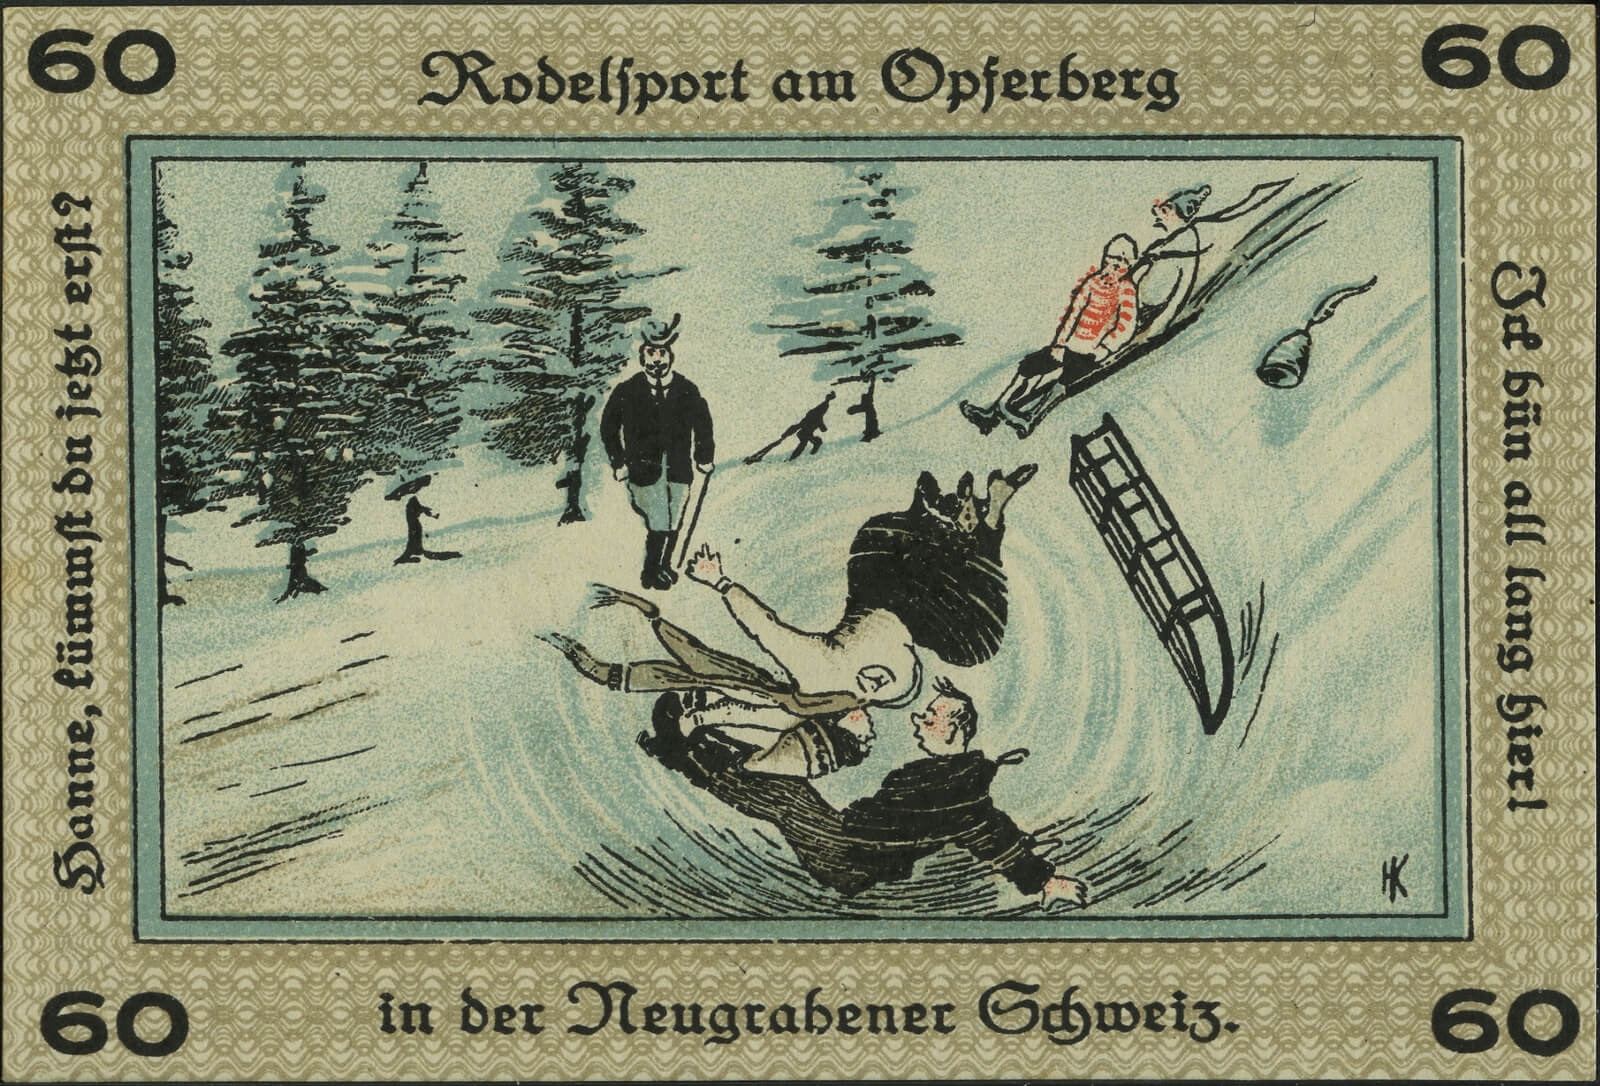 Zeichnung auf der Rückseite des Notgeldes von 1921: Rodler befahren eine Schneebedeckte Piste, zwei stützen übereinander